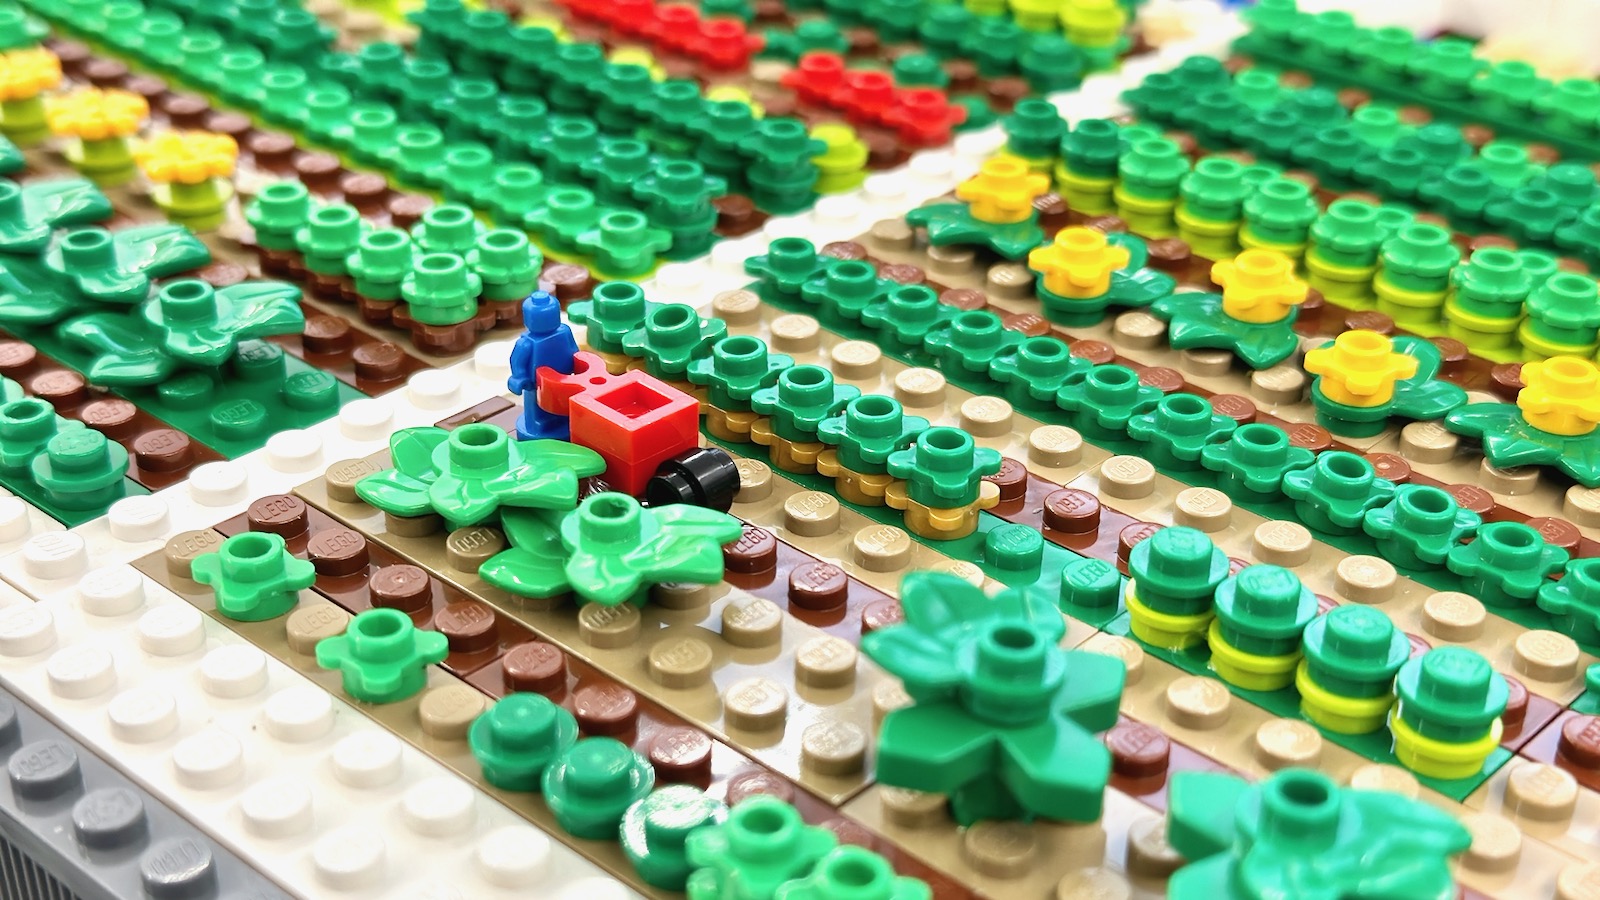 Art with LEGO bricks - Javits Center (annex)